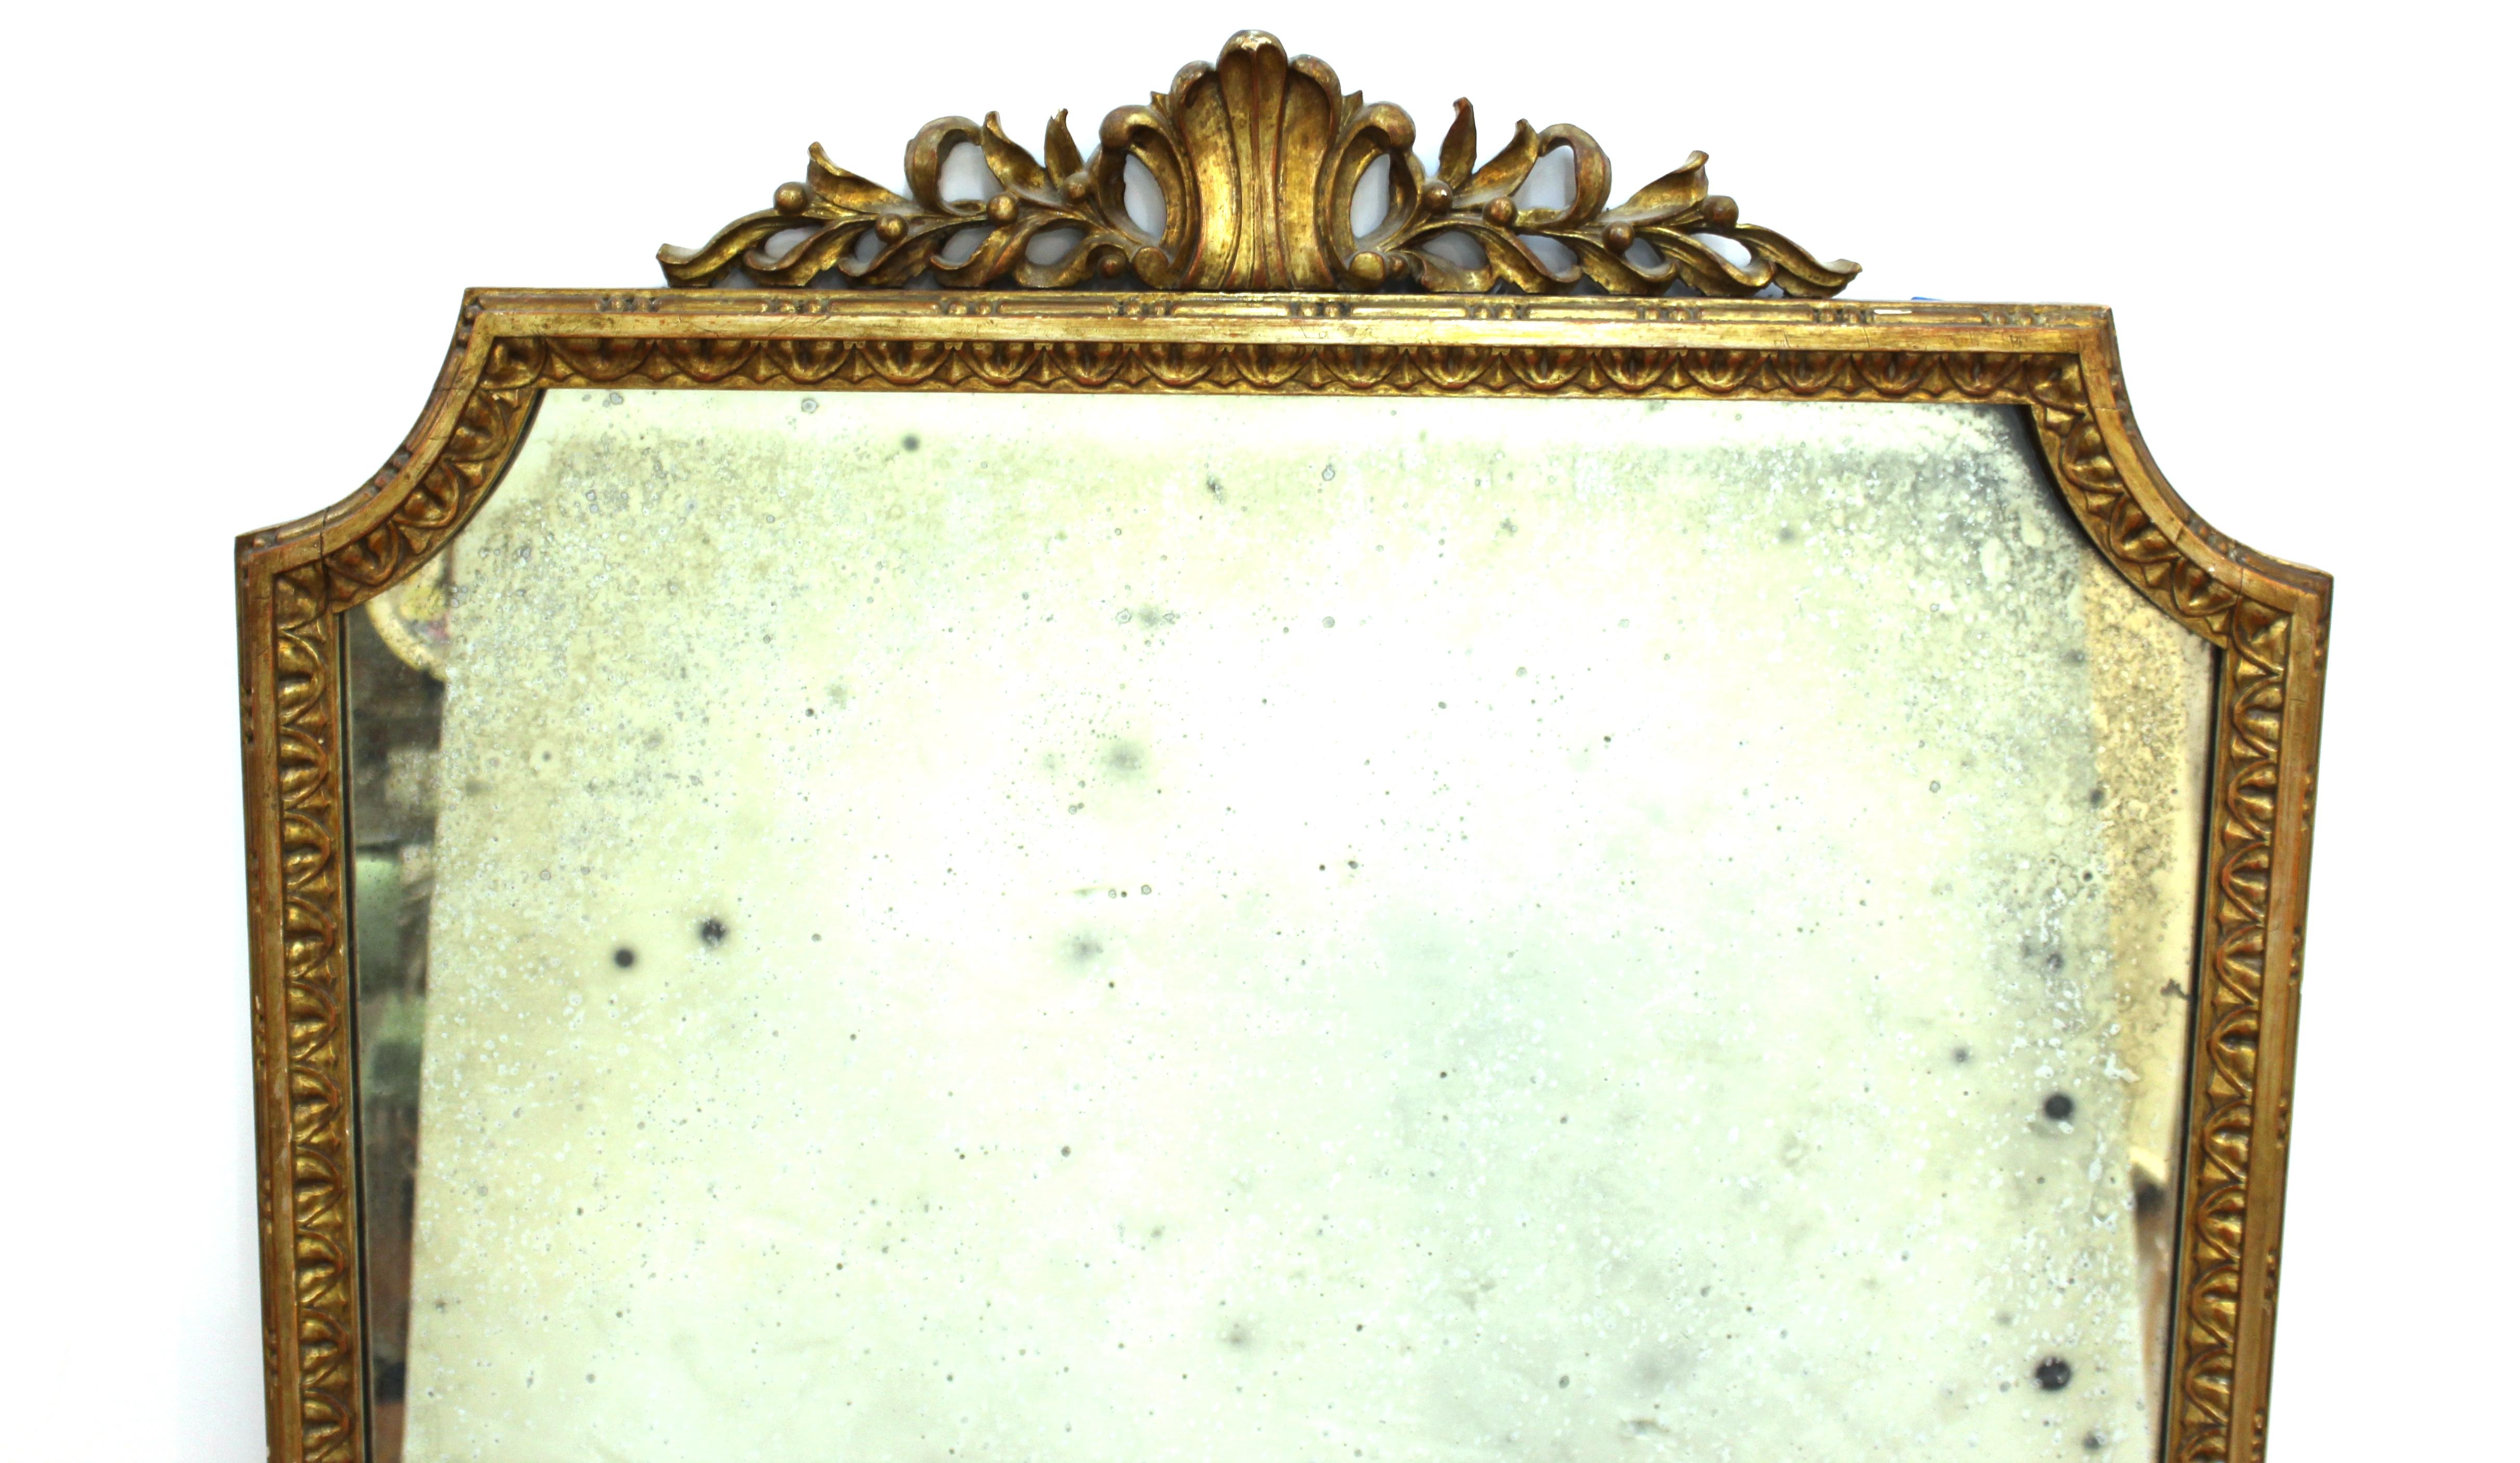 Miroir mural de style néoclassique avec cadre en bois doré sculpté et verre miroir vieilli. 

Concessionnaire : S138XX